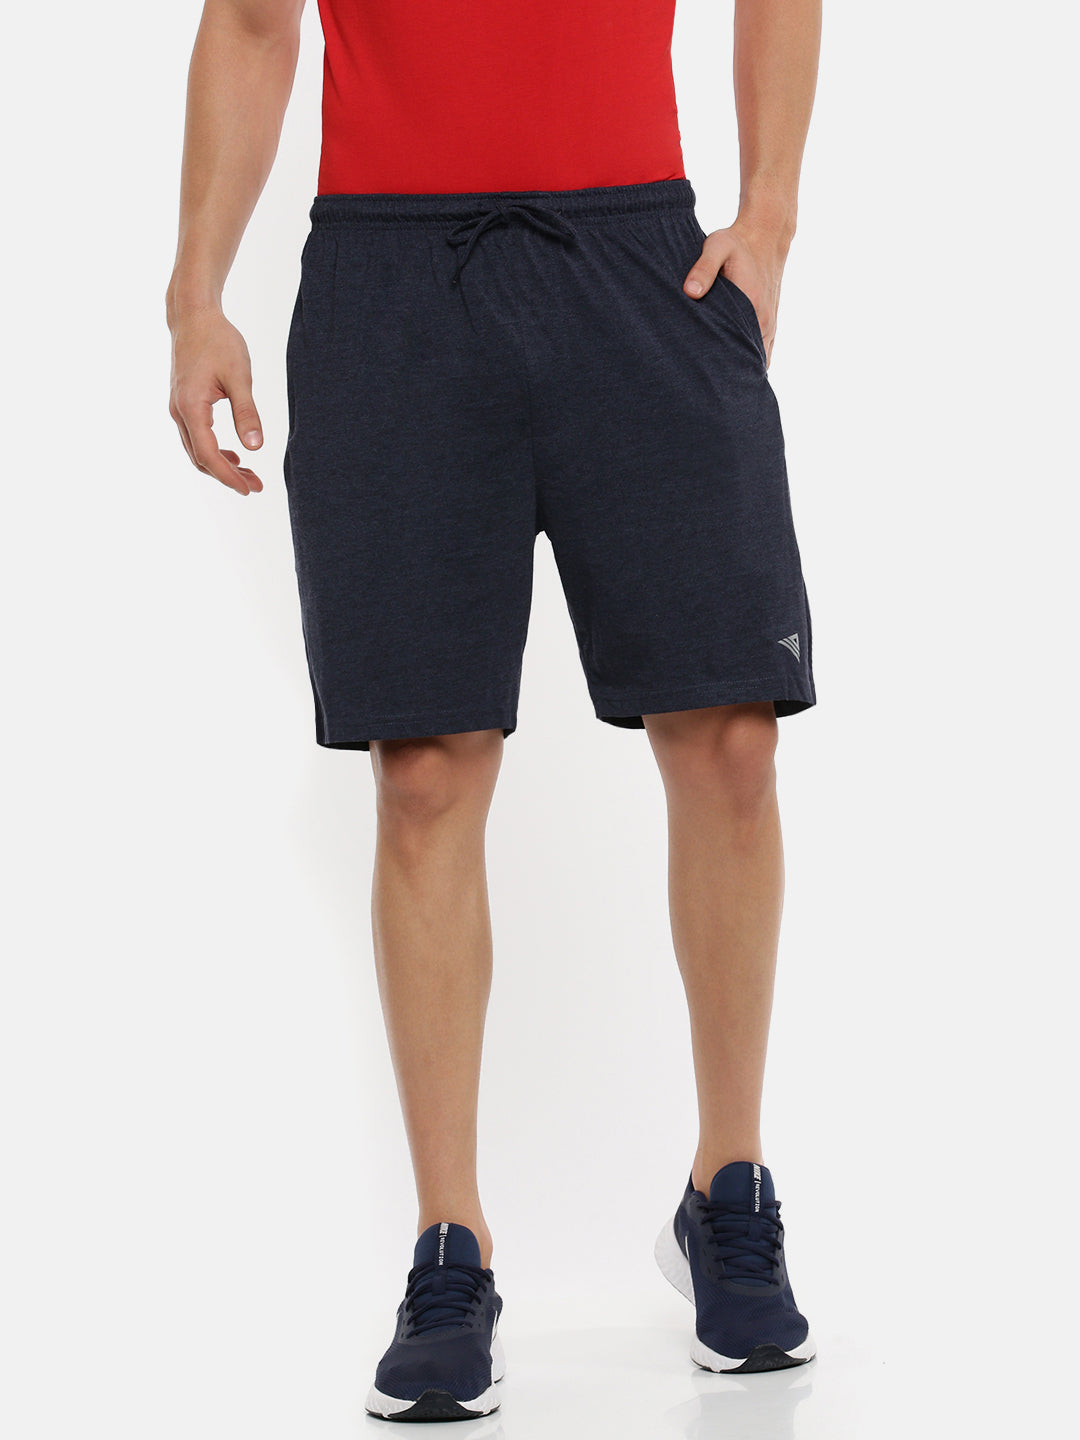 Men's Pants & Shorts - Shop for Men Products Online